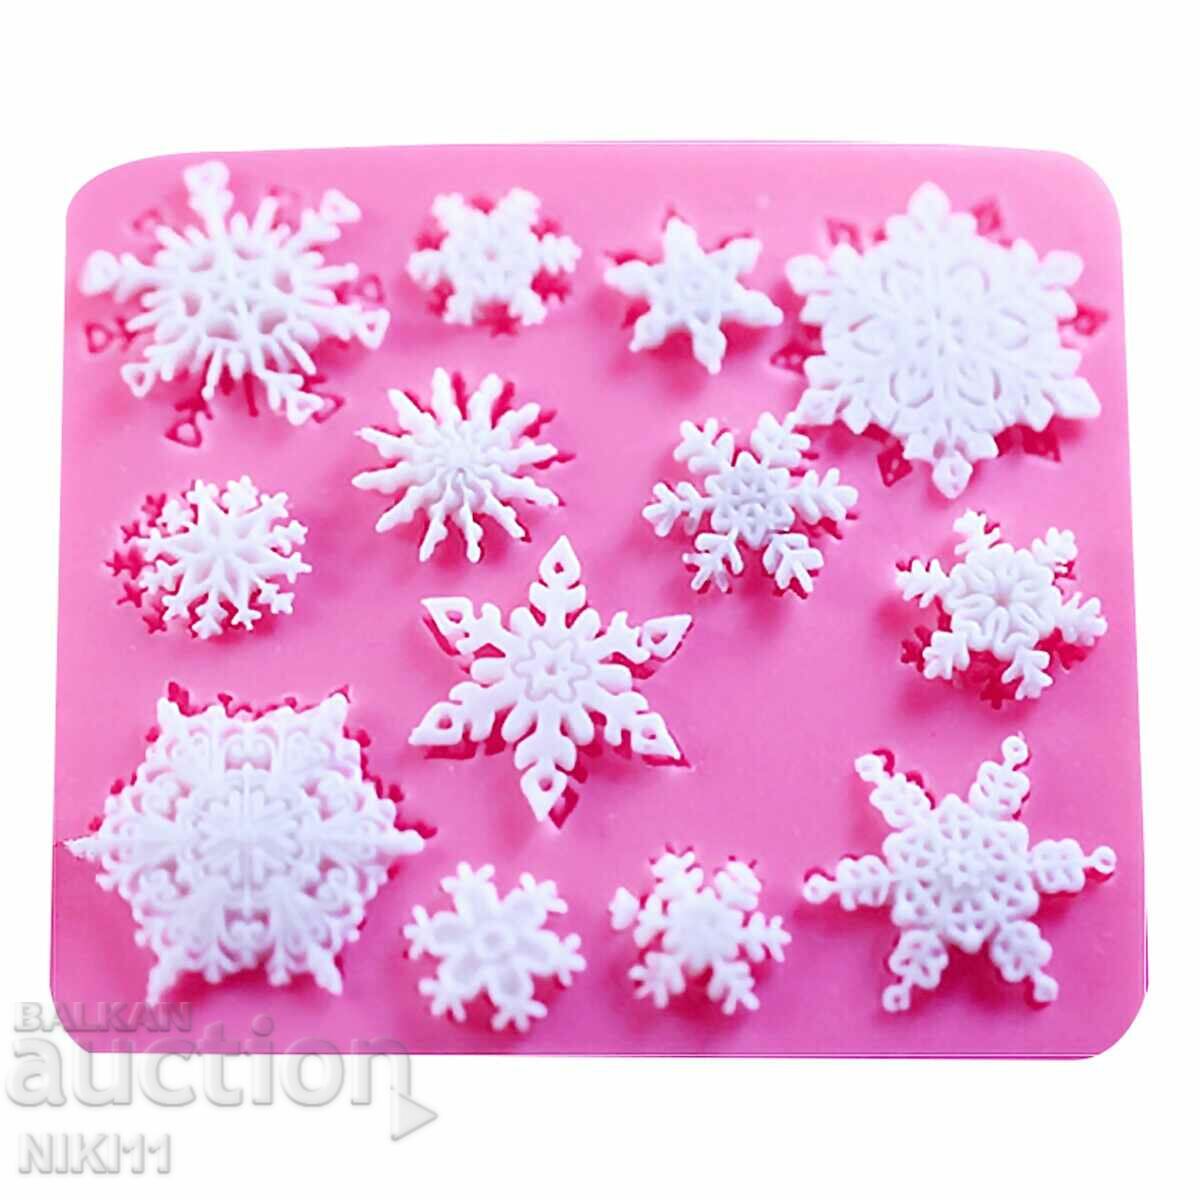 Silicone mold 13 snowflakes, snowflake decoration fondant